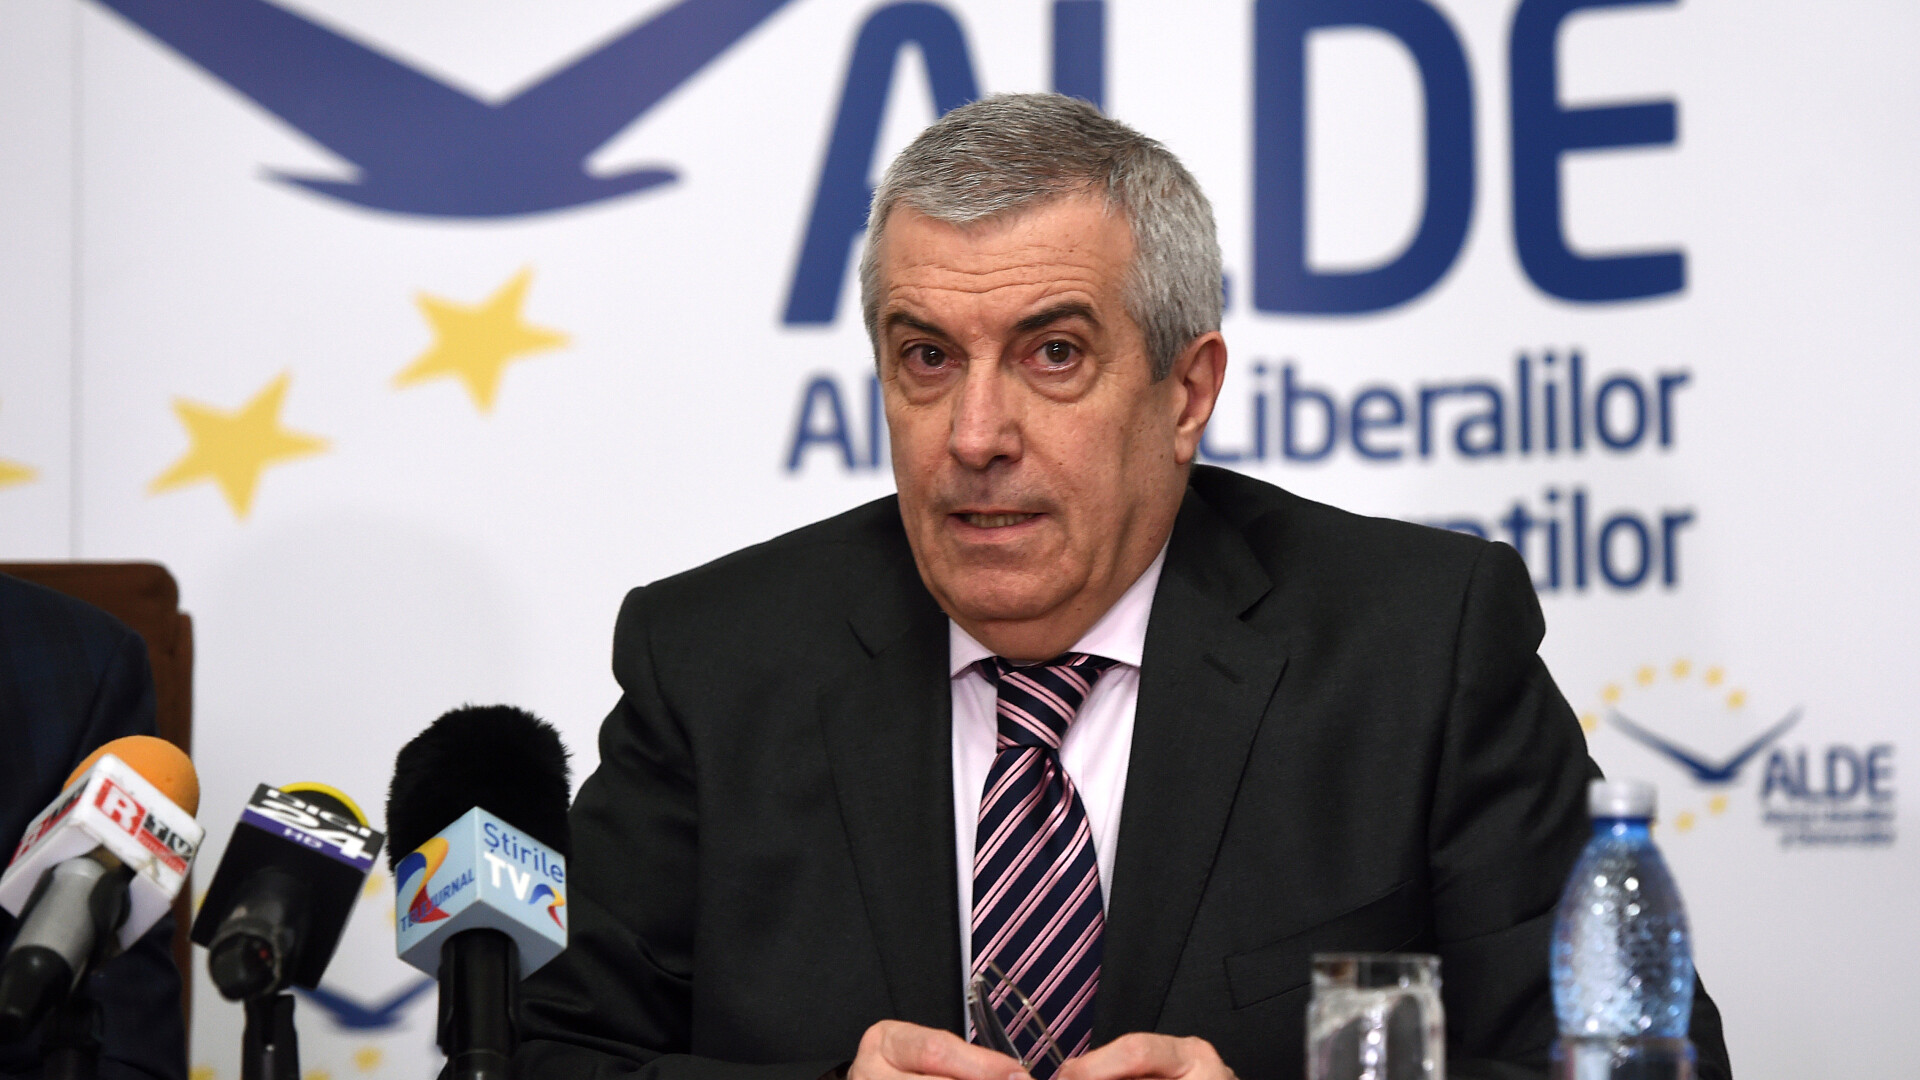 Calin Popescu-Tariceanu, copresedinte ALDE